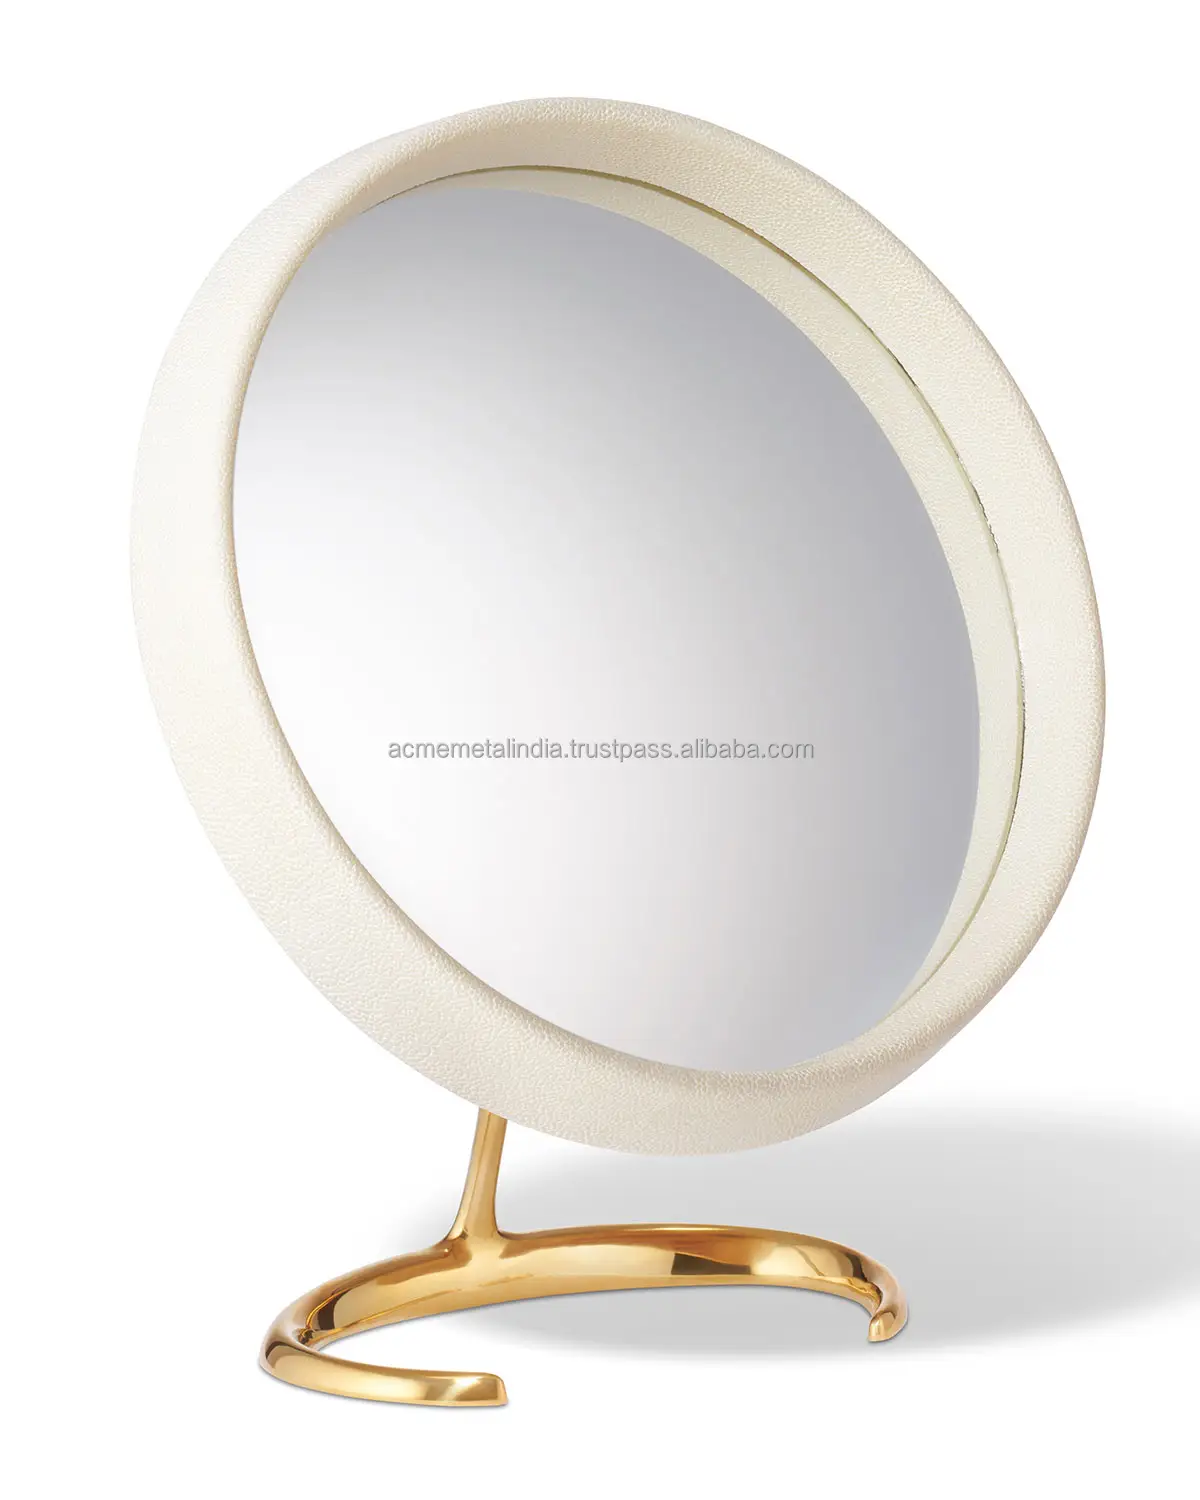 Tốt nhất bán kim loại Vanity phản ánh gương make up Máy tính để bàn gương xoay cổ điển độc quyền lớp phủ màu trắng thiết kế mới